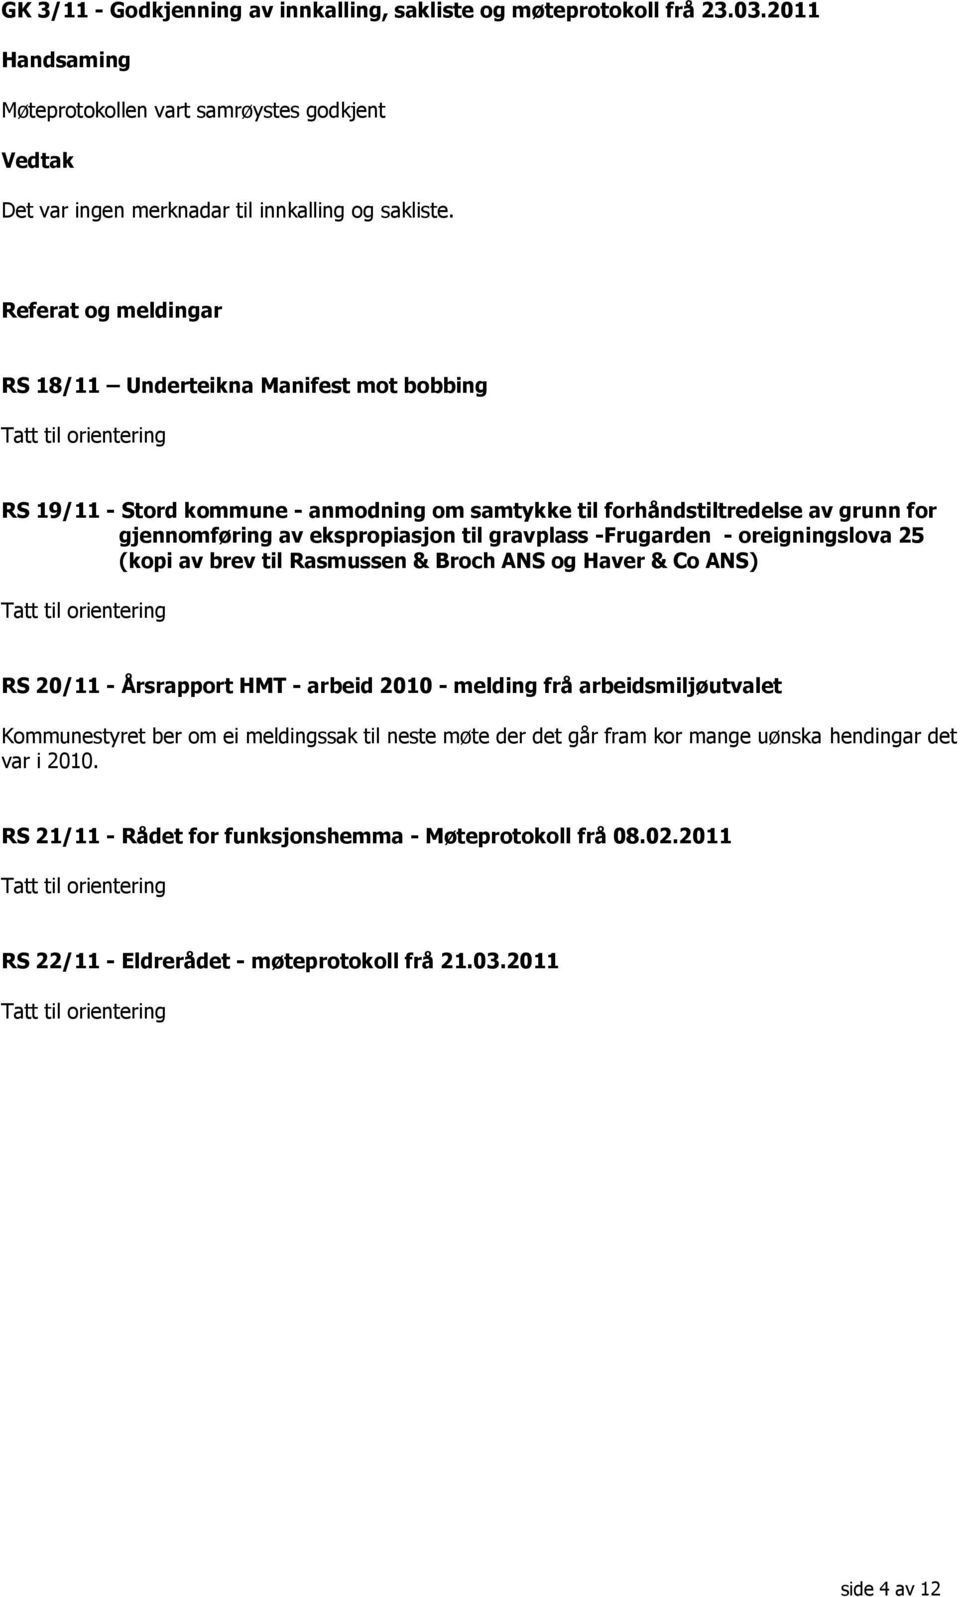 ekspropiasjon til gravplass -Frugarden - oreigningslova 25 (kopi av brev til Rasmussen & Broch ANS og Haver & Co ANS) Tatt til orientering RS 20/11 - Årsrapport HMT - arbeid 2010 - melding frå